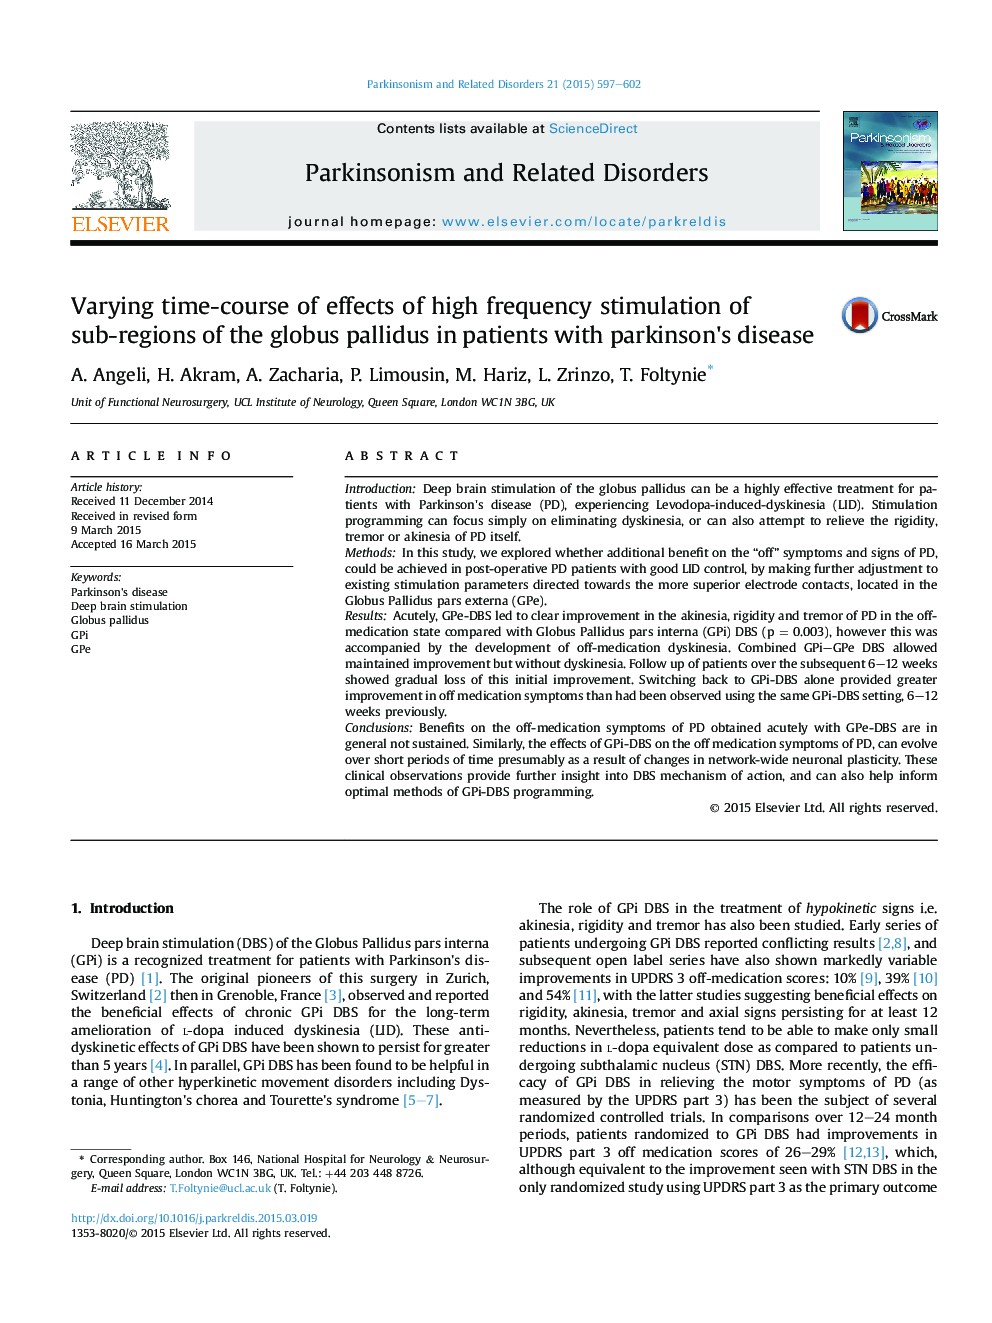 تغییر زمان دوره ای اثر تحریک فرکانس بالا در مناطق فرعی گلوبوس پالیدو در بیماران مبتلا به بیماری پارکینسون 